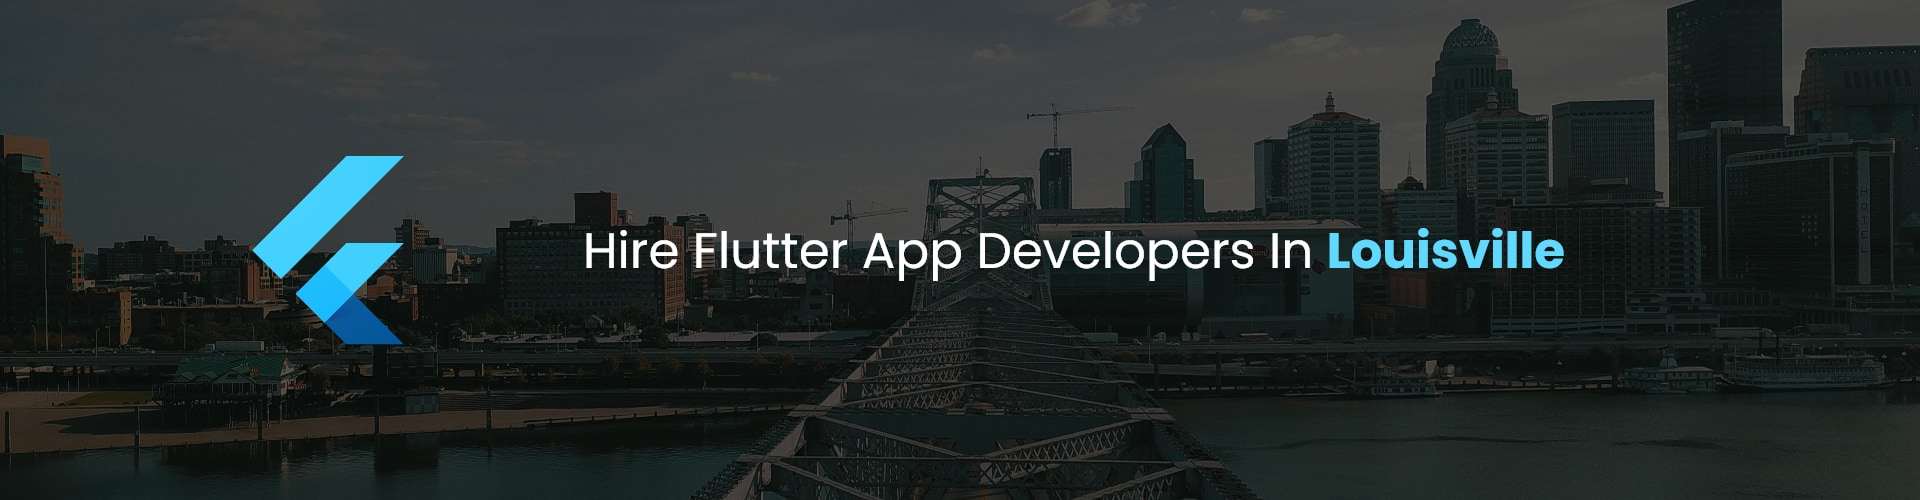 hire flutter app developers in louisville